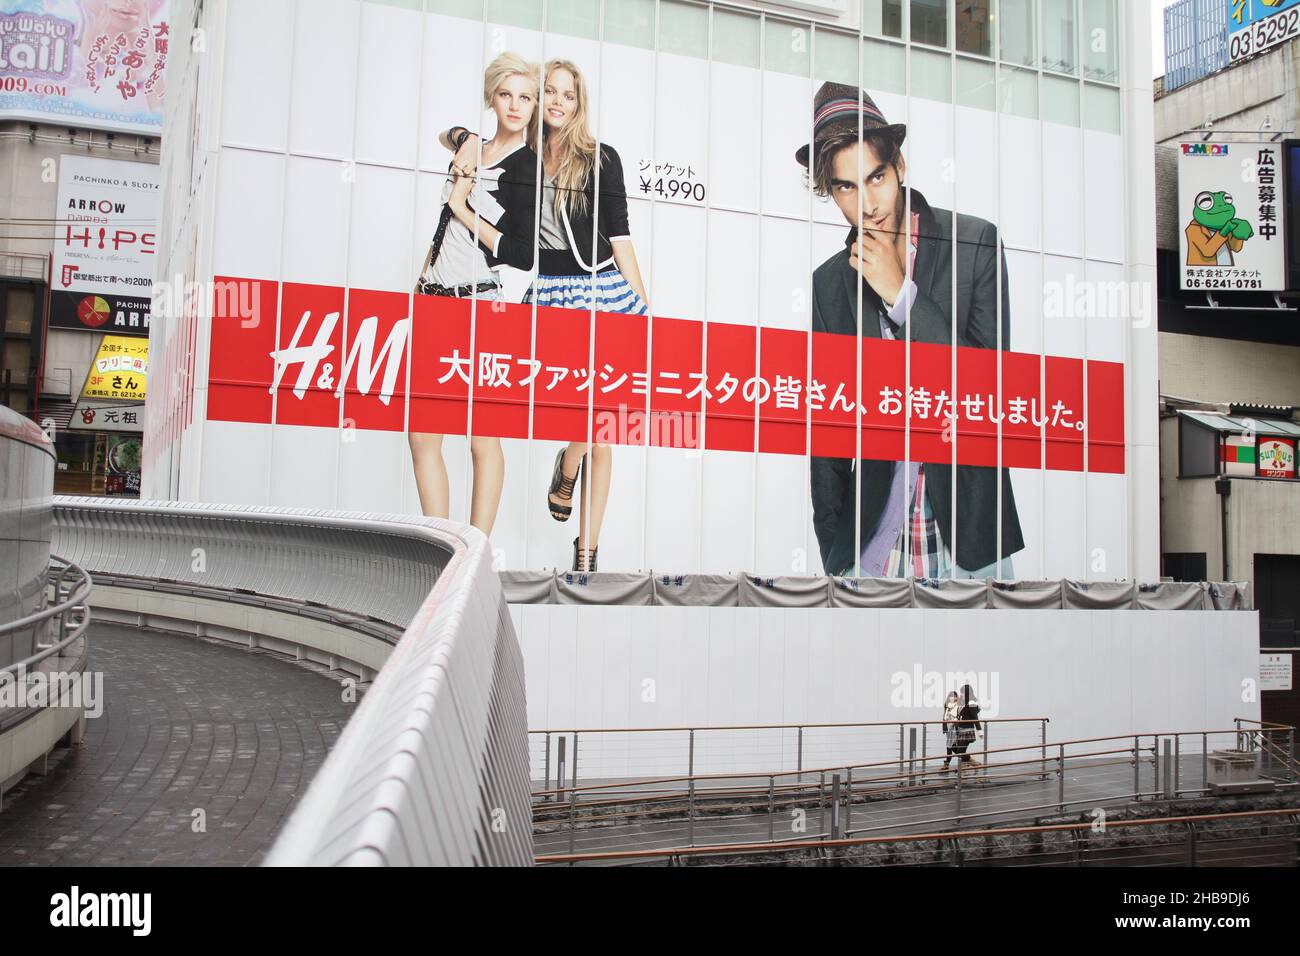 H&m advert Banque de photographies et d'images à haute résolution - Alamy